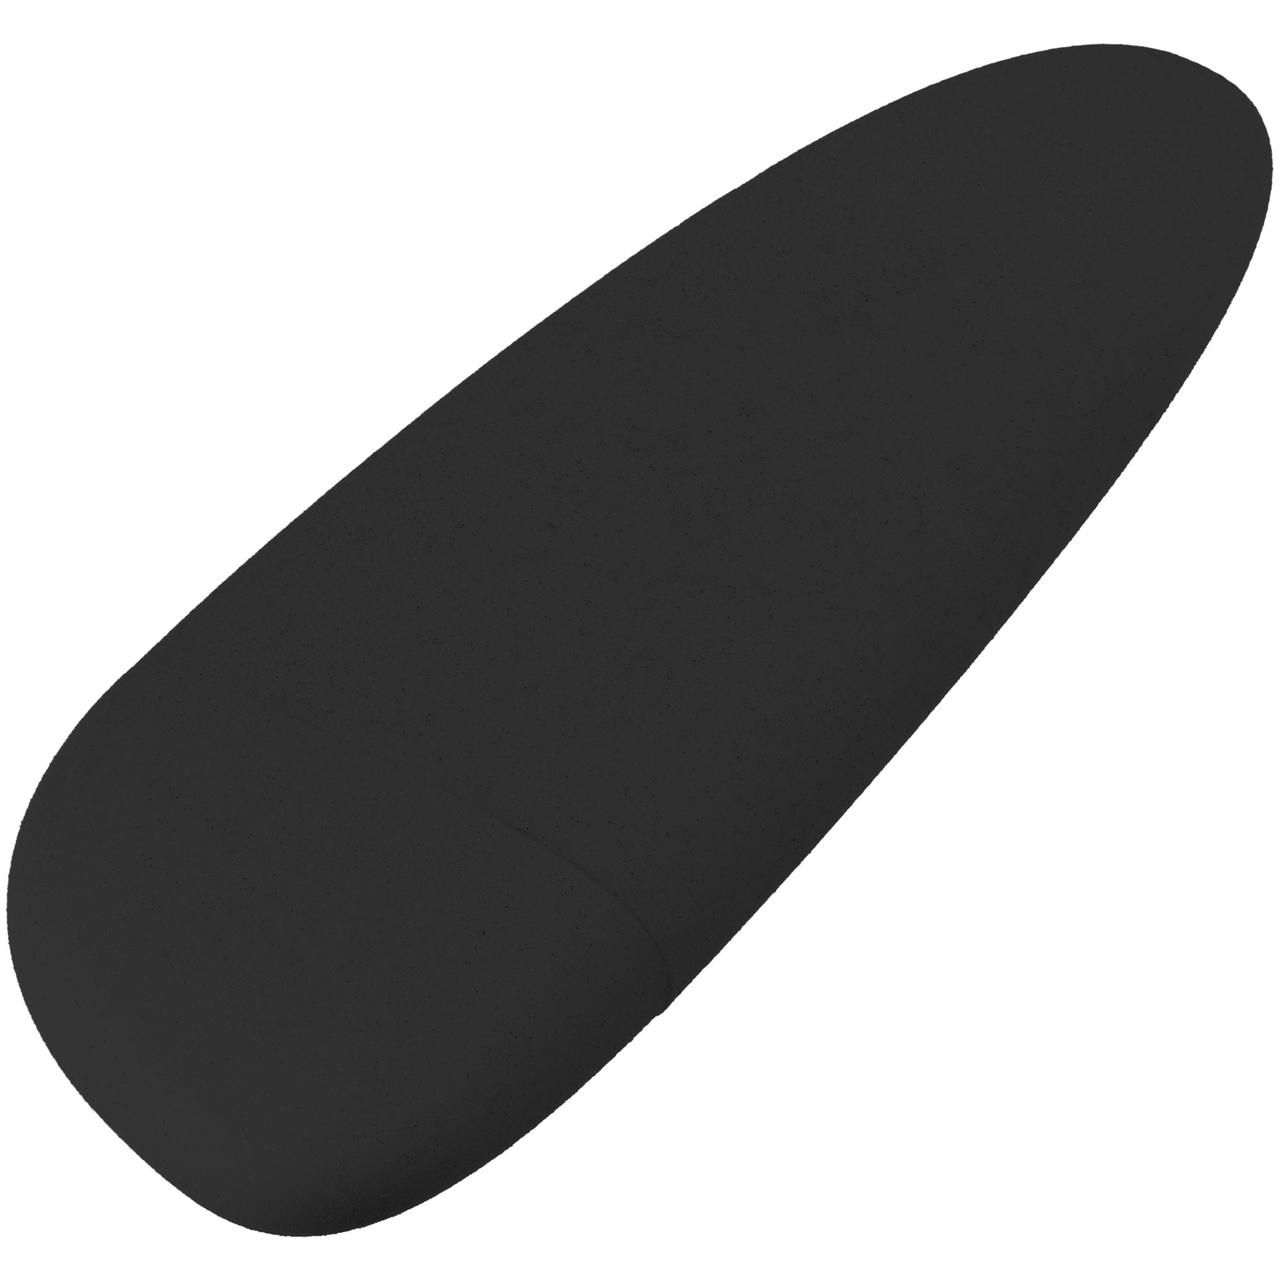 Флешка Pebble, черная, USB 3.0, 16 Гб (артикул 11811.36)